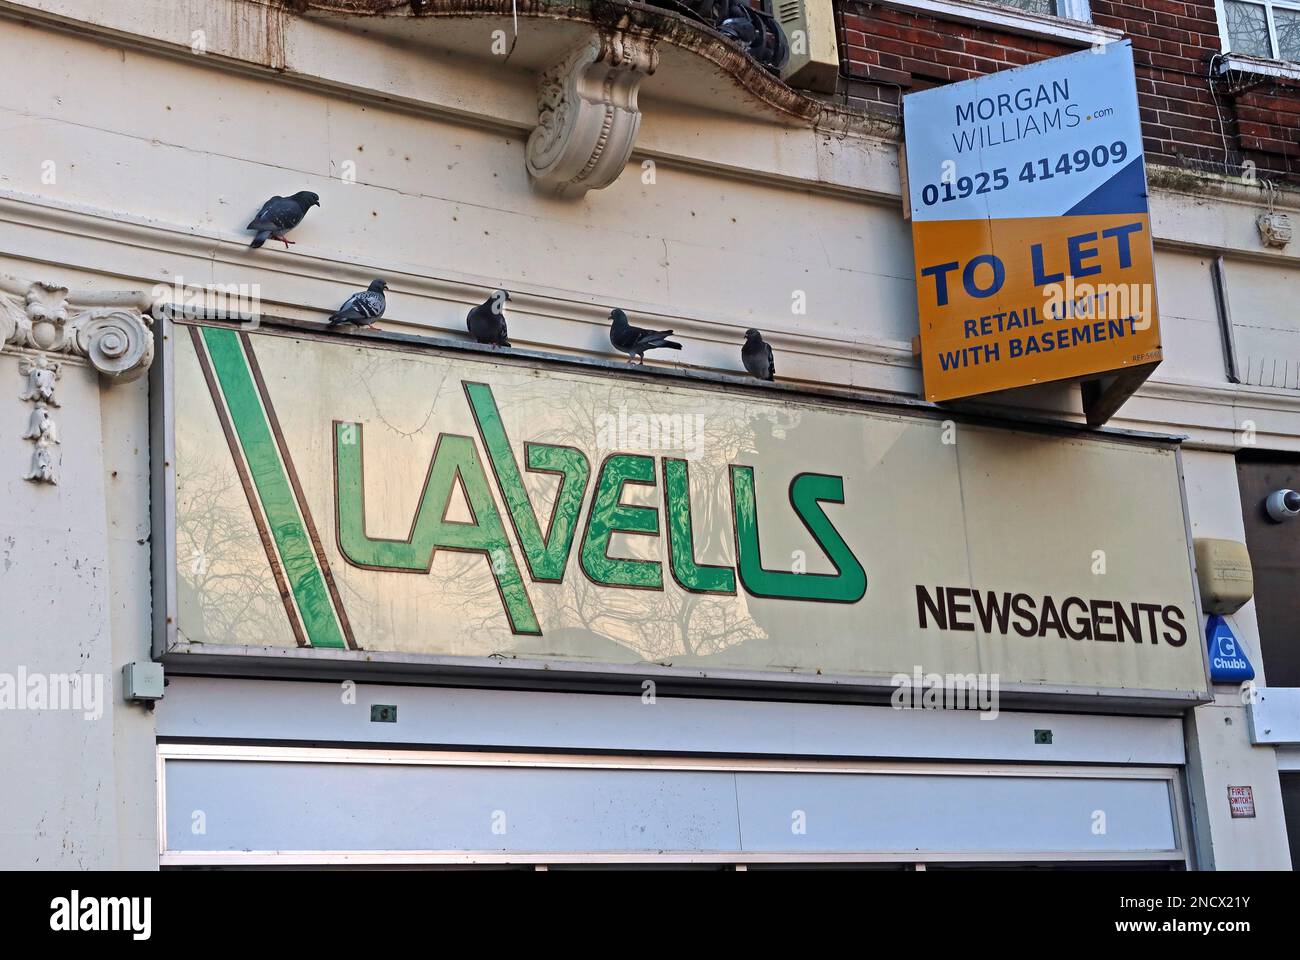 Panneau de presse de Lavells cubes verts historiques, de 1987, Market Gate Chambers, 4 Buttermarket St, Warrington, Cheshire, Angleterre, ROYAUME-UNI, WA1 2LL Banque D'Images